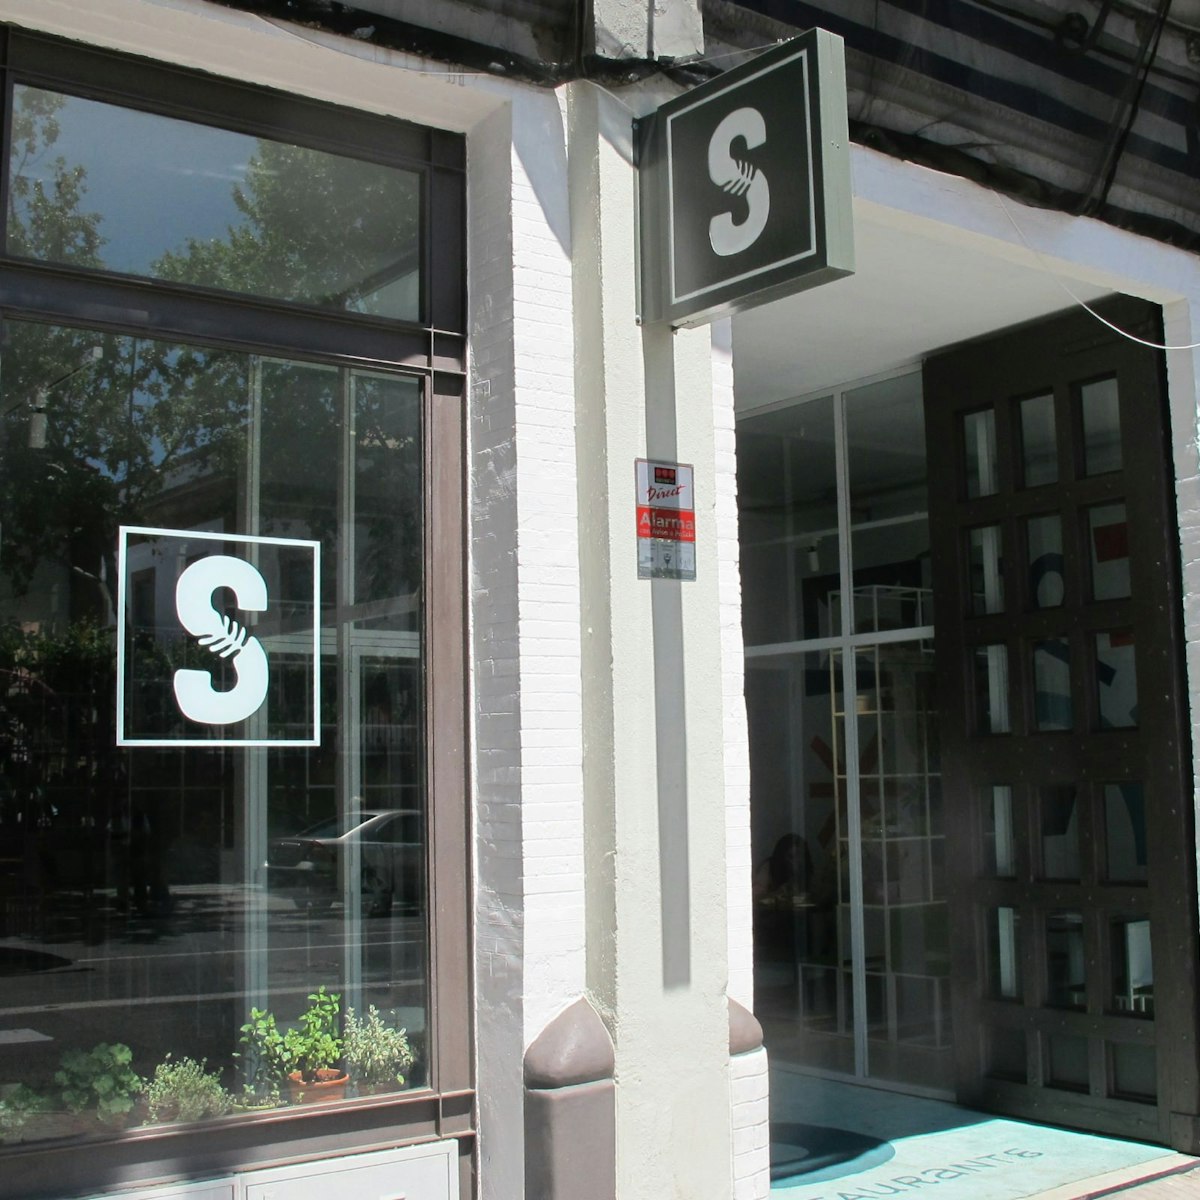 Facade of Salvaje restaurant with S sign in window.